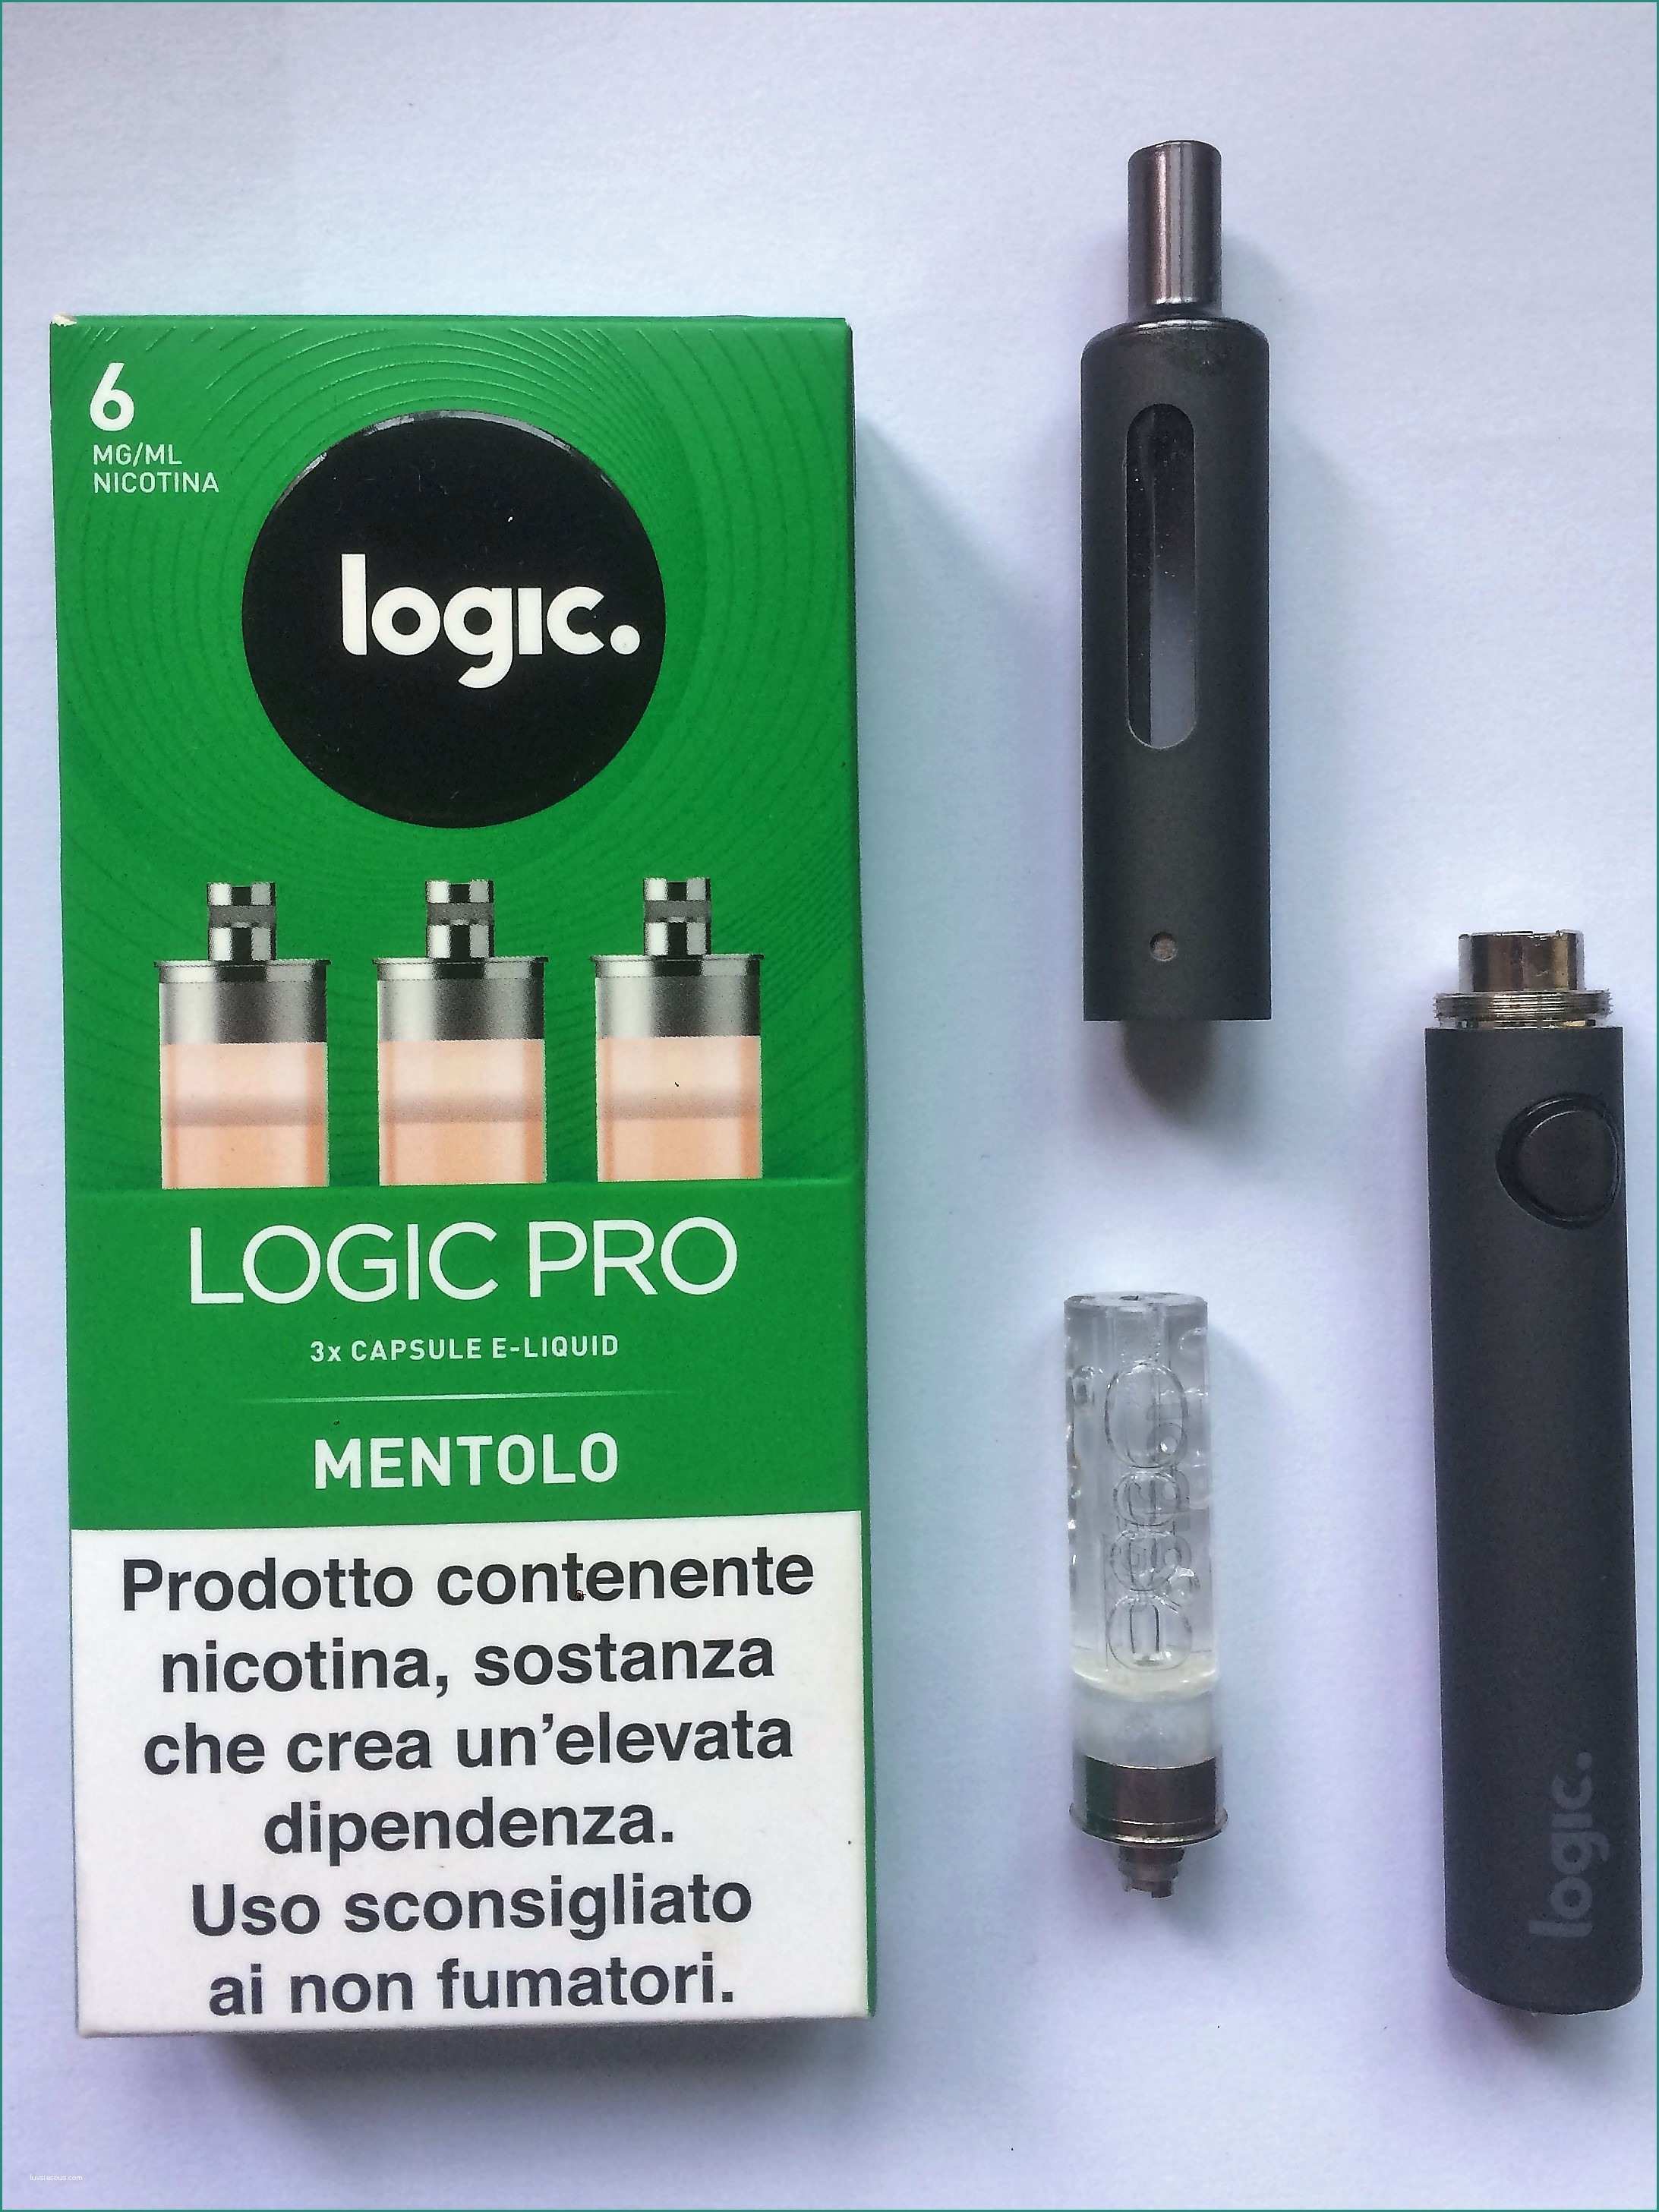 Logic Pro Sigaretta E Logic Pro La Sigaretta Elettronica Che Non Richiede